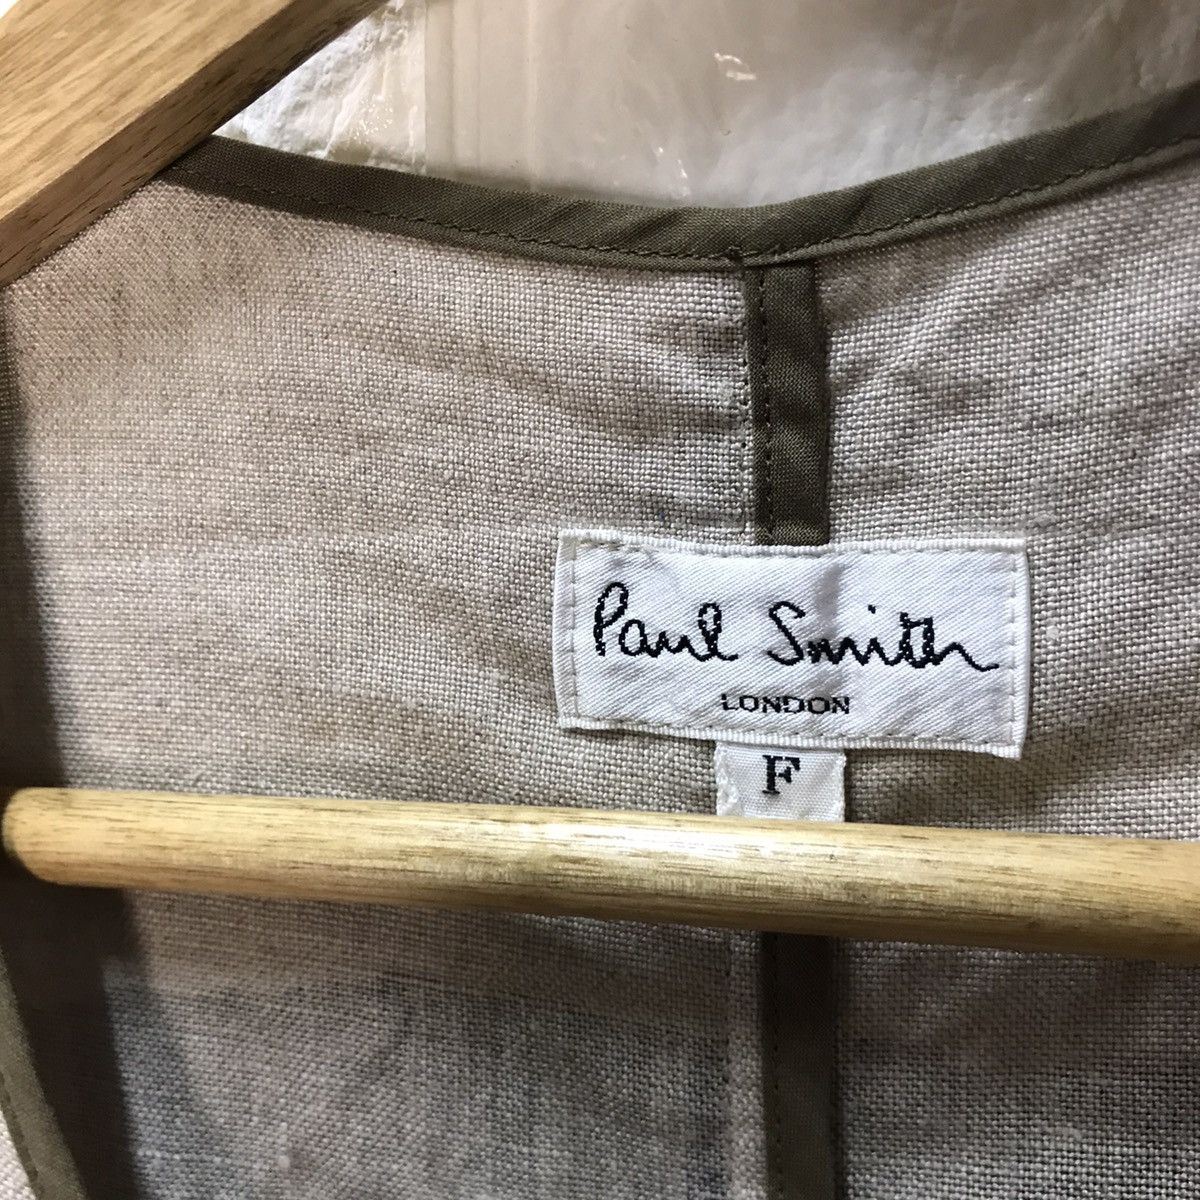 Paul smith indigo hand paint vest jacket - 3